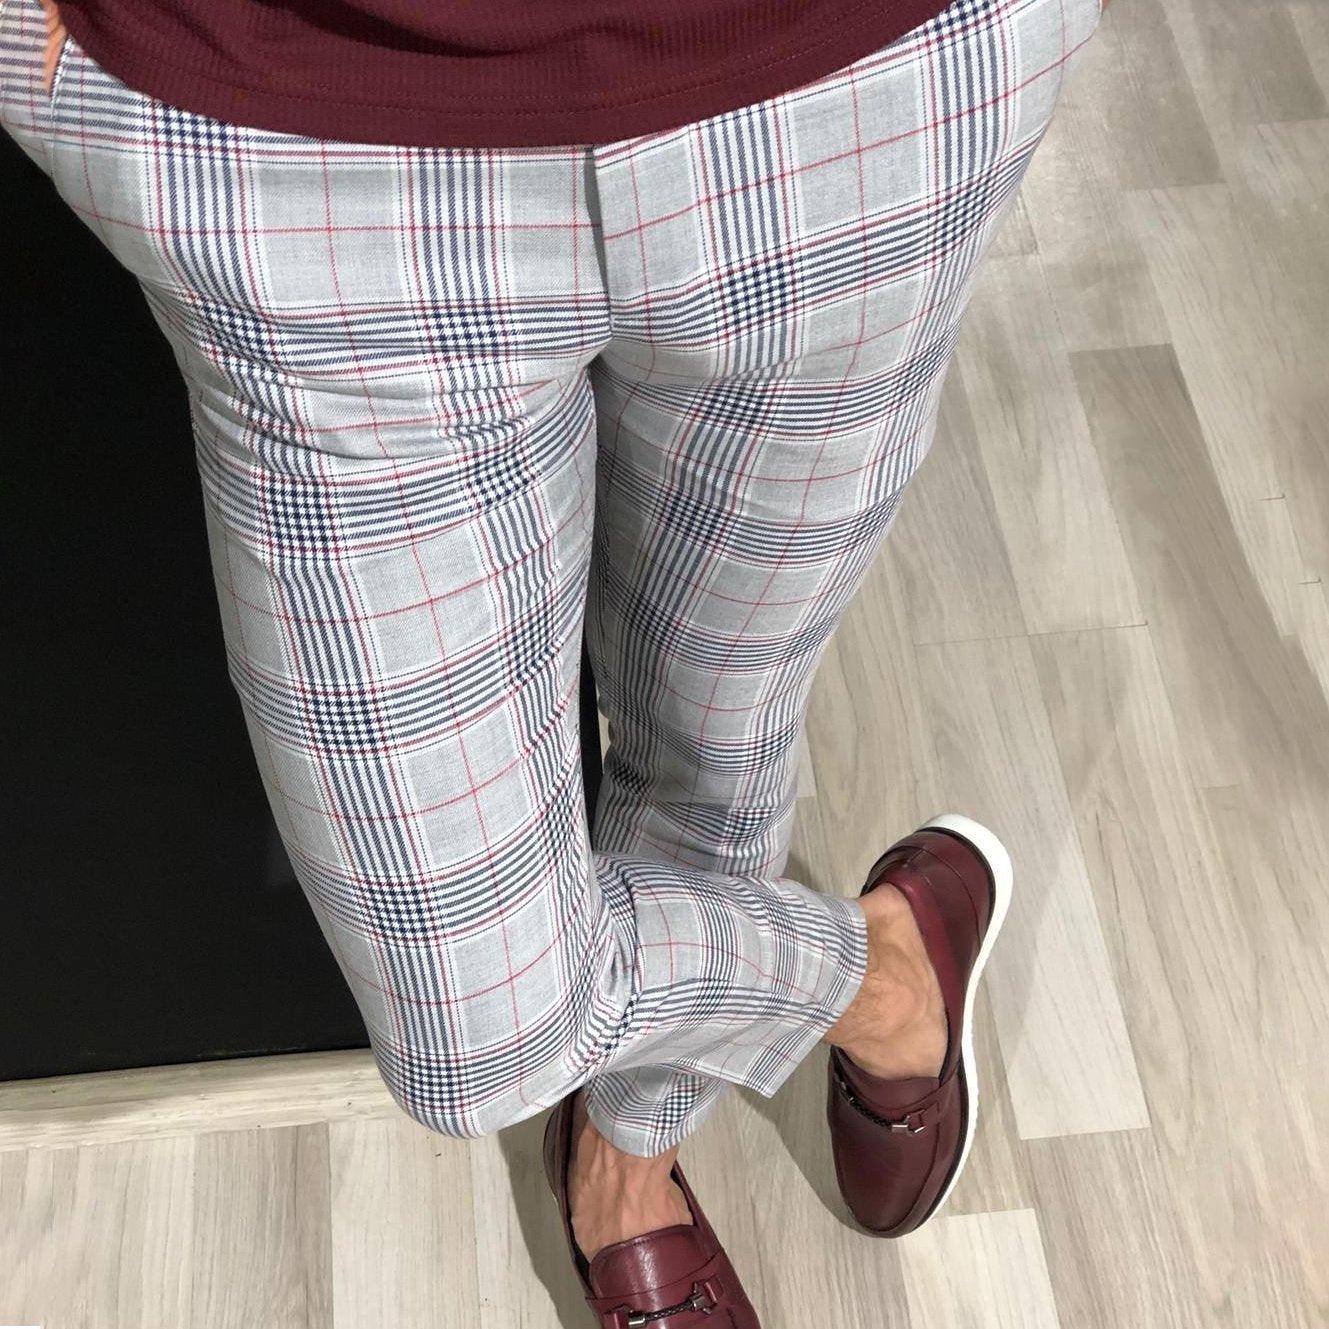 Men's Plaid business pants